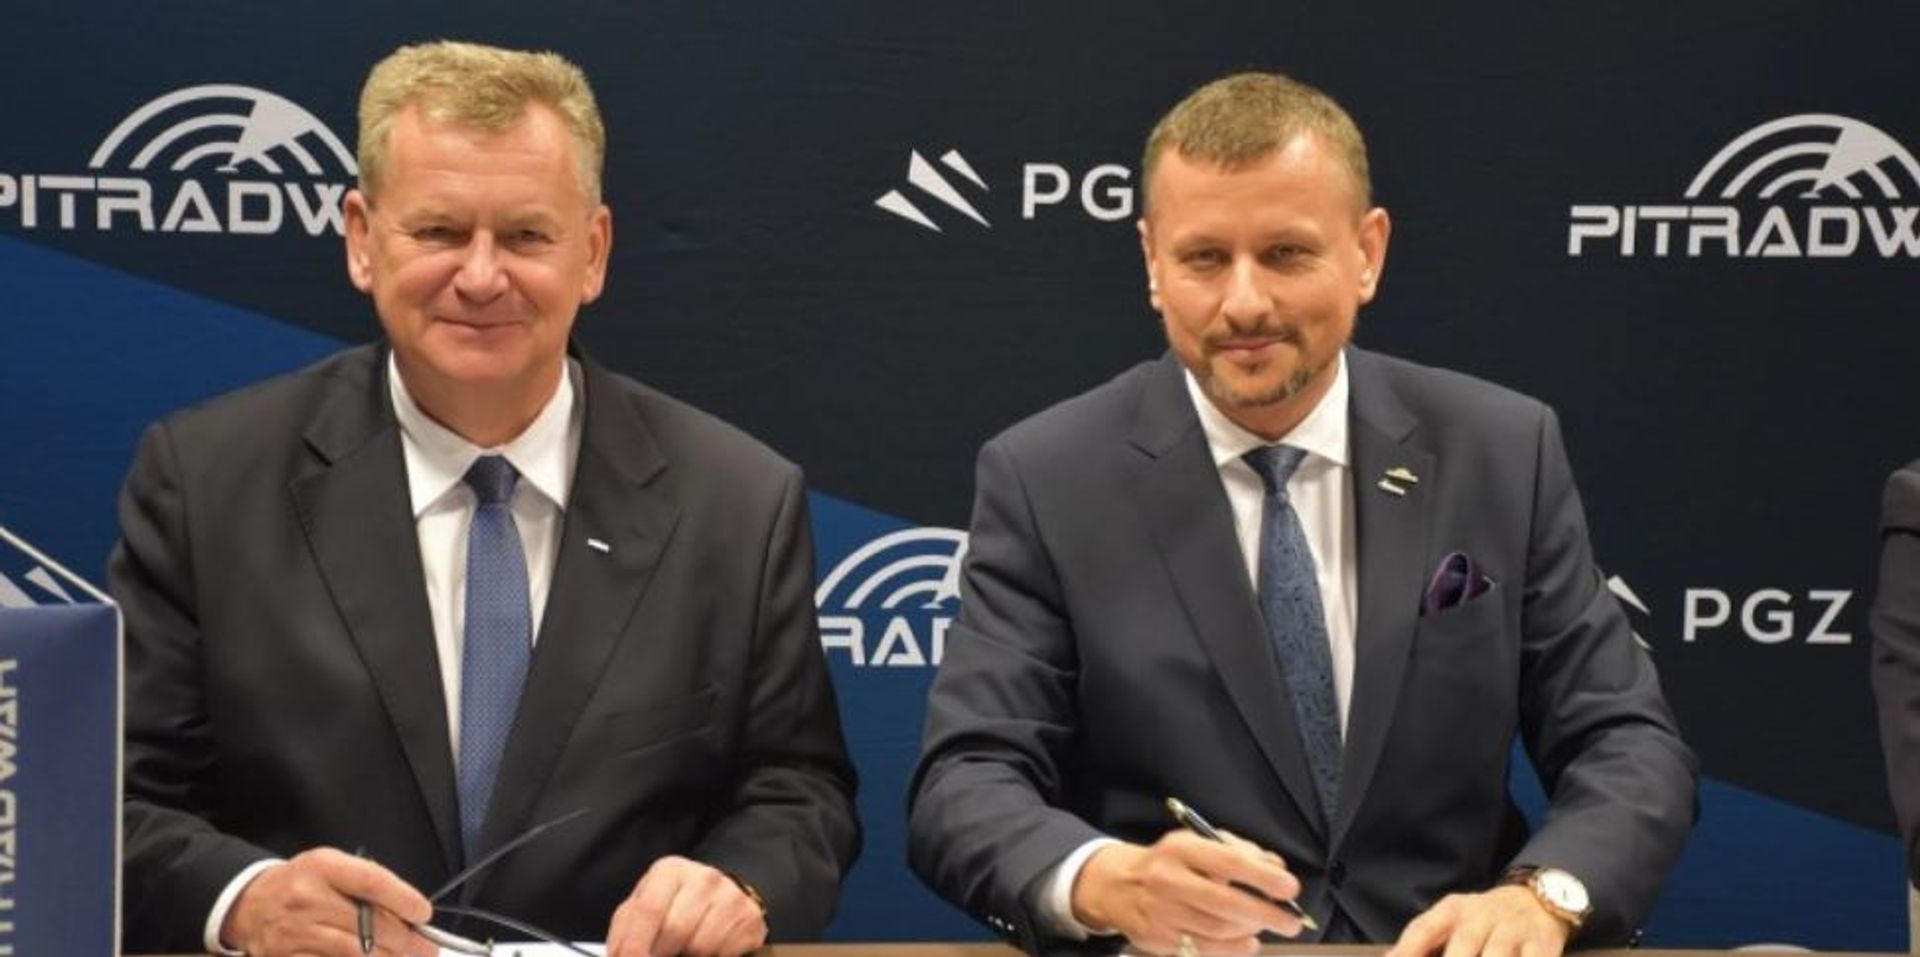 PIT-RADWAR rozbuduje za 100 mln zł zakład produkcyjny w Kobyłce pod Warszawą